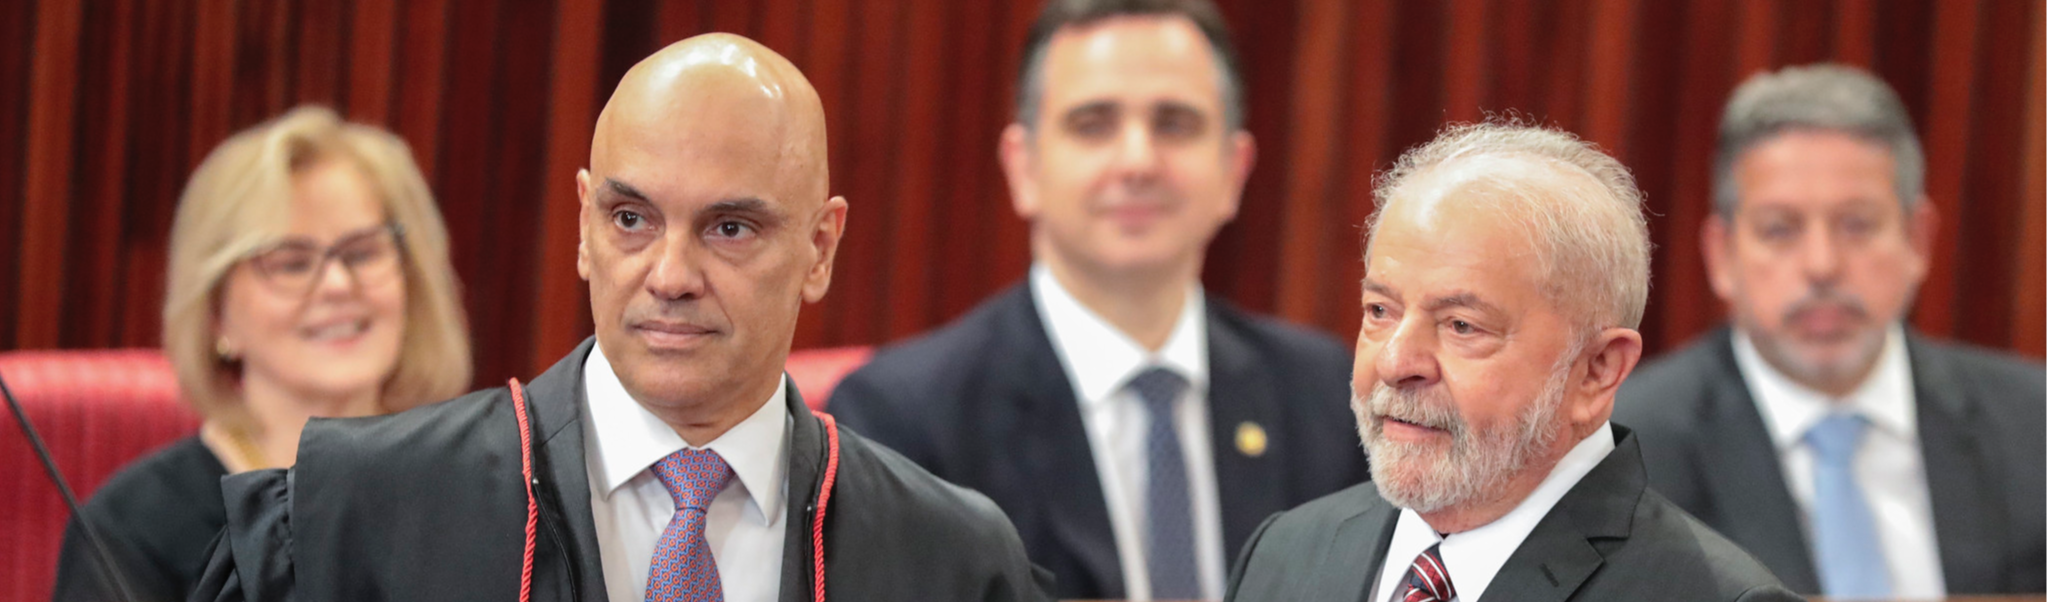 Durante diplomação de Lula, Alexandre de Moraes alerta golpistas: terão punição